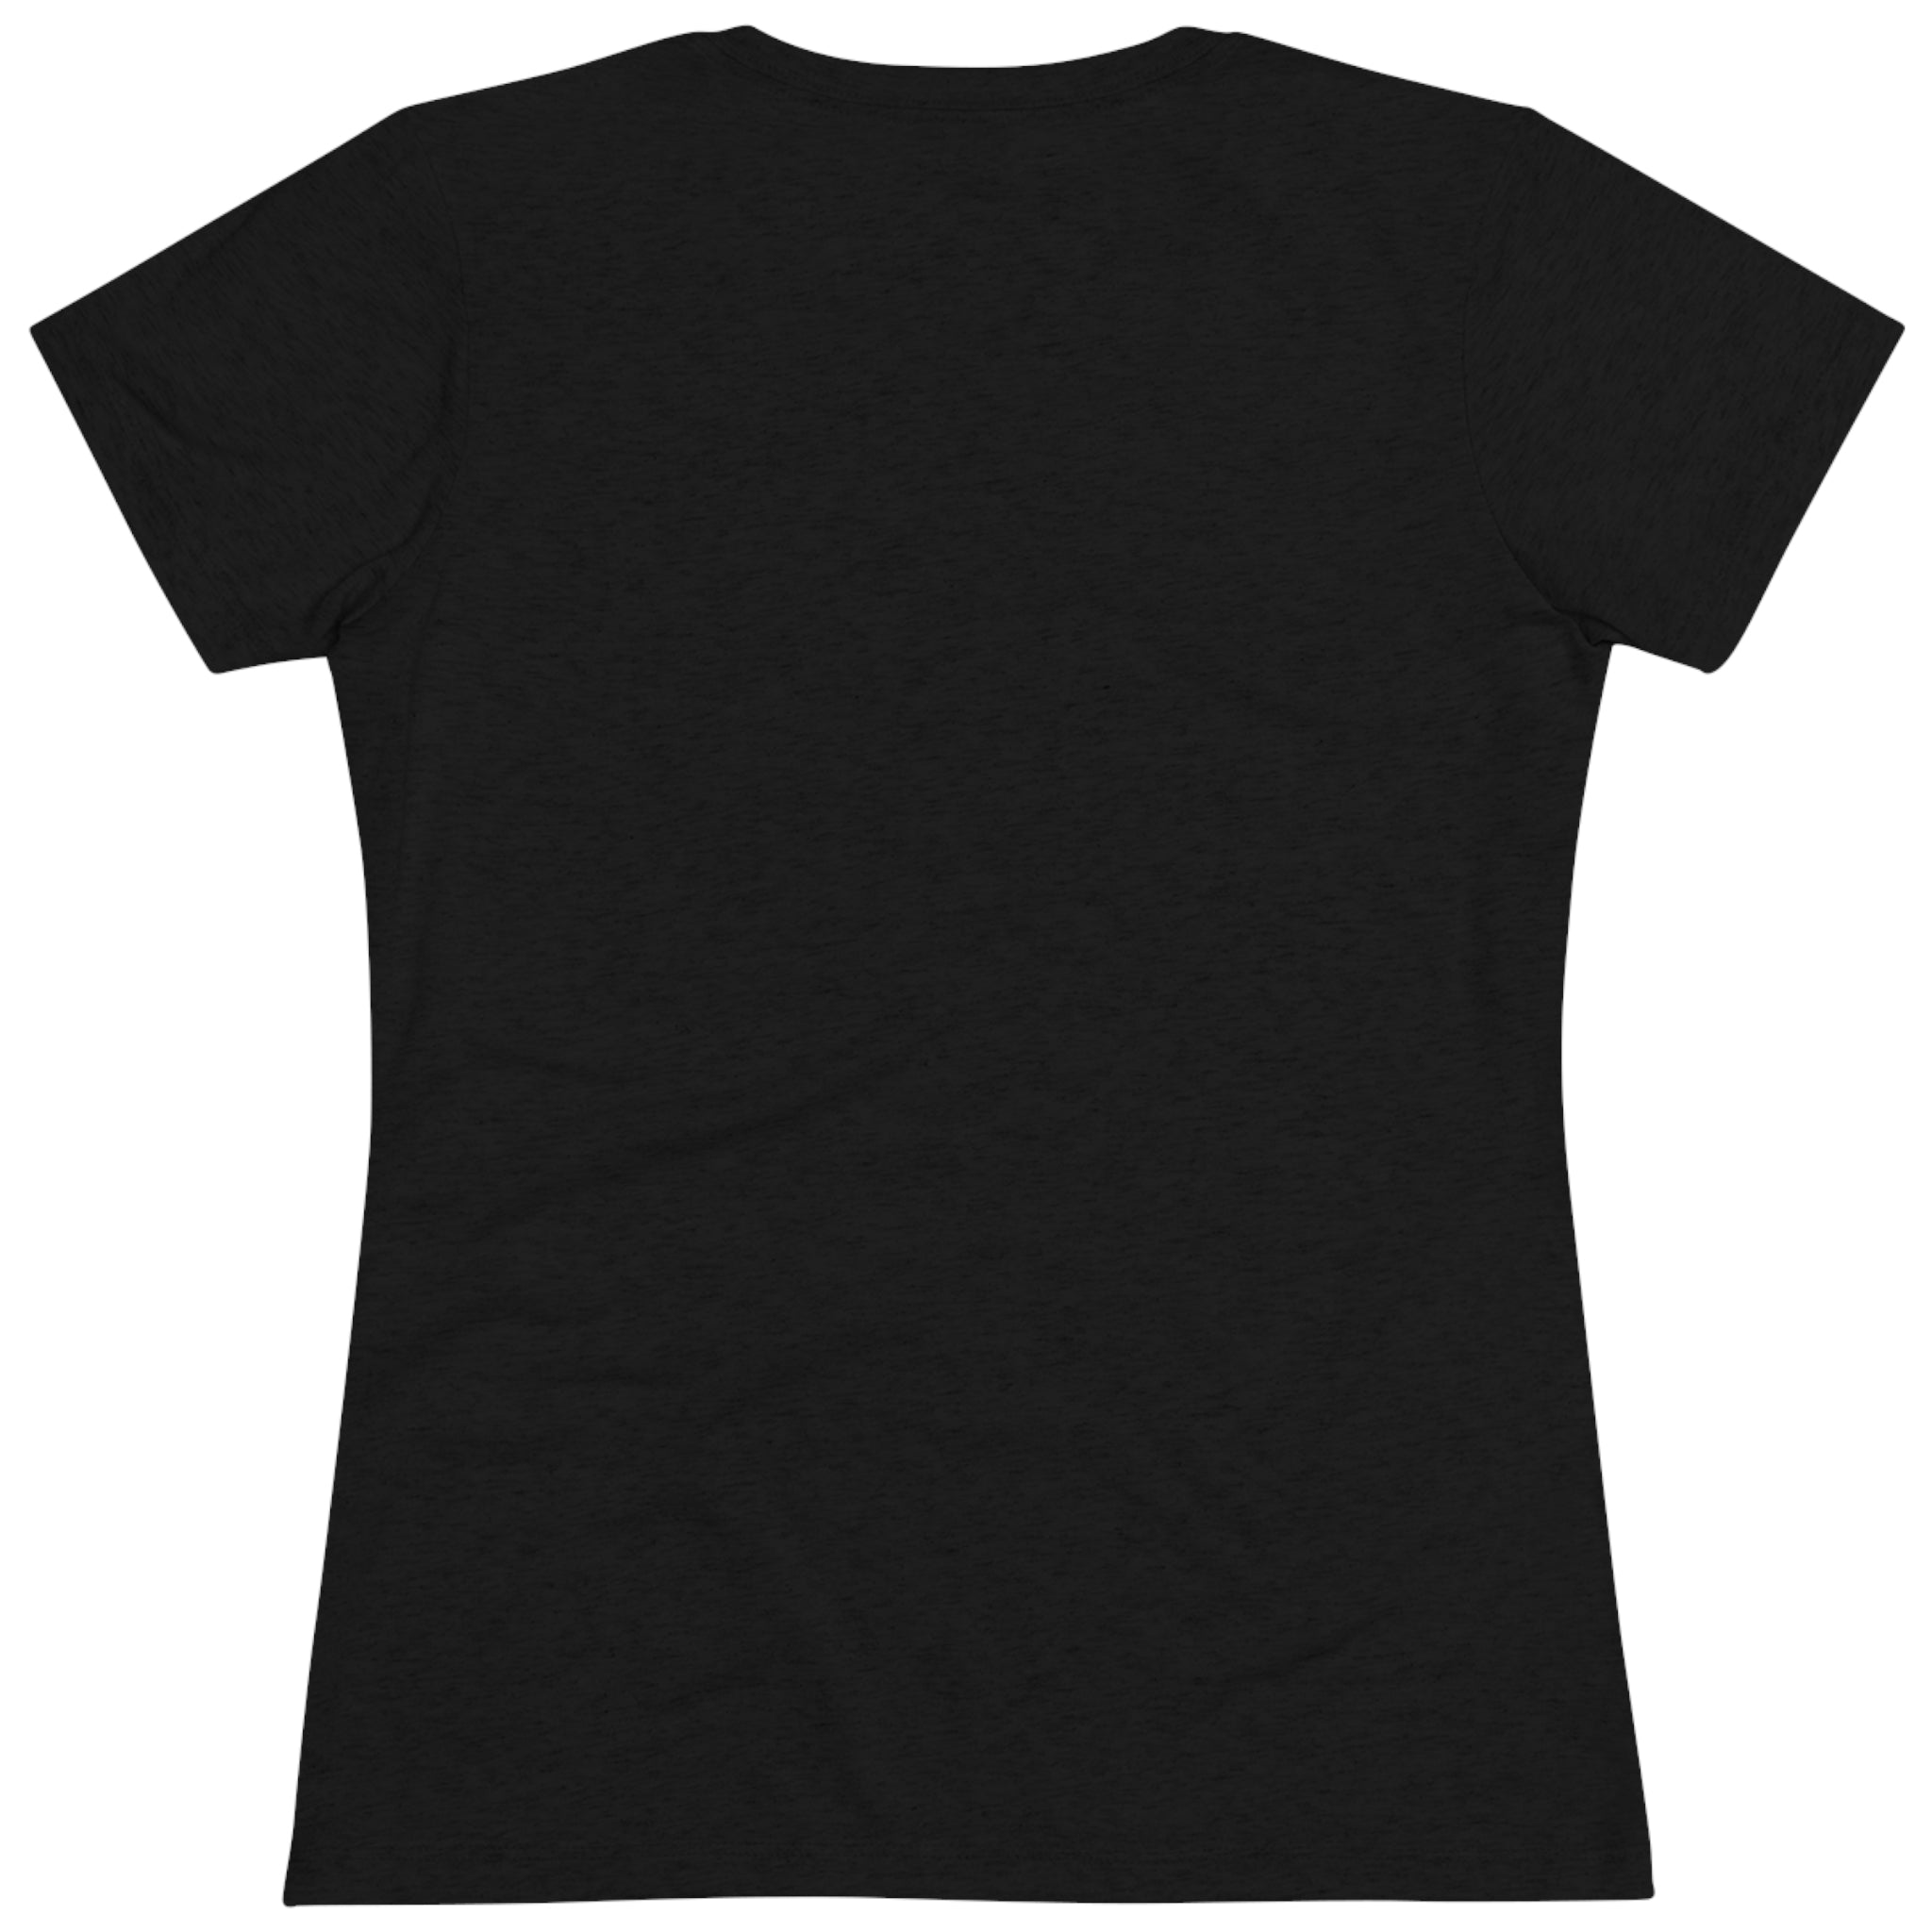 Women's St. Francis Premium T-shirt